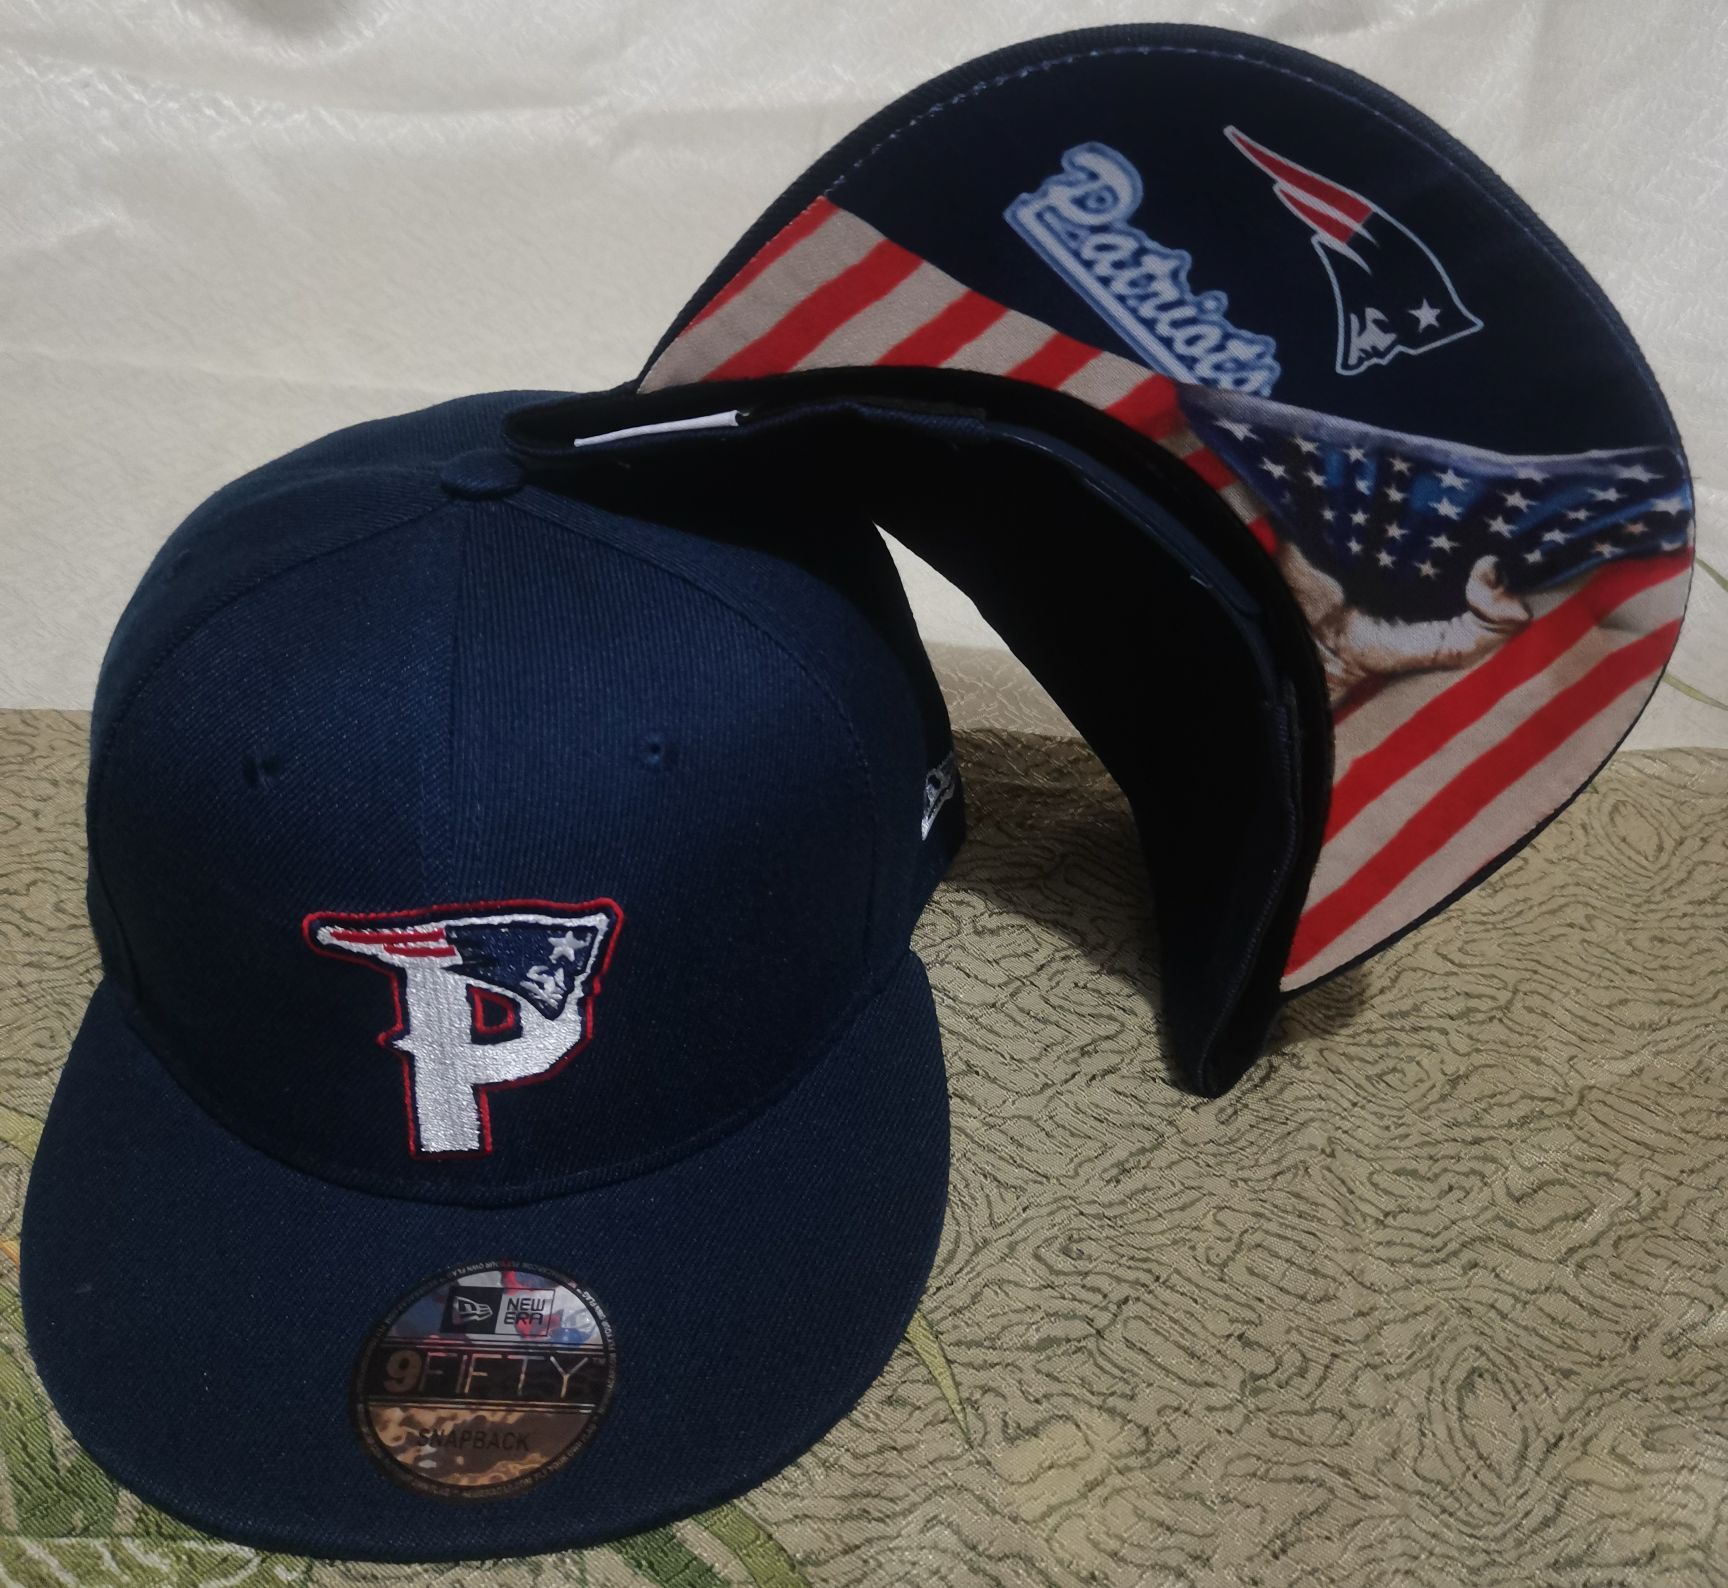 2021 NFL New England Patriots #16 hat->nfl hats->Sports Caps